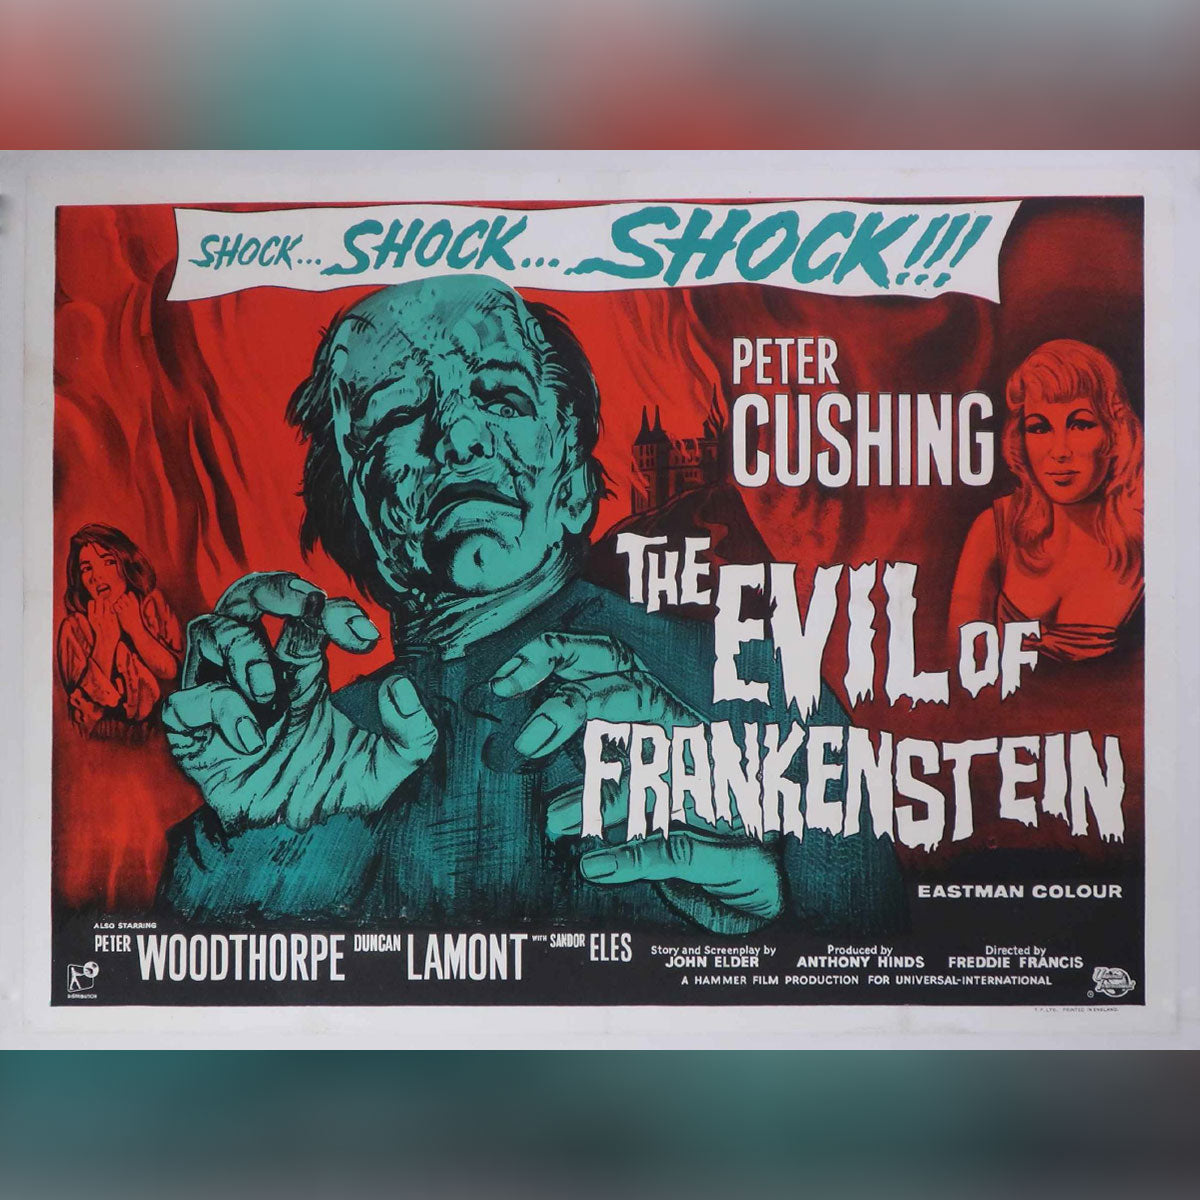 Evil of Frankenstein, The (1964)